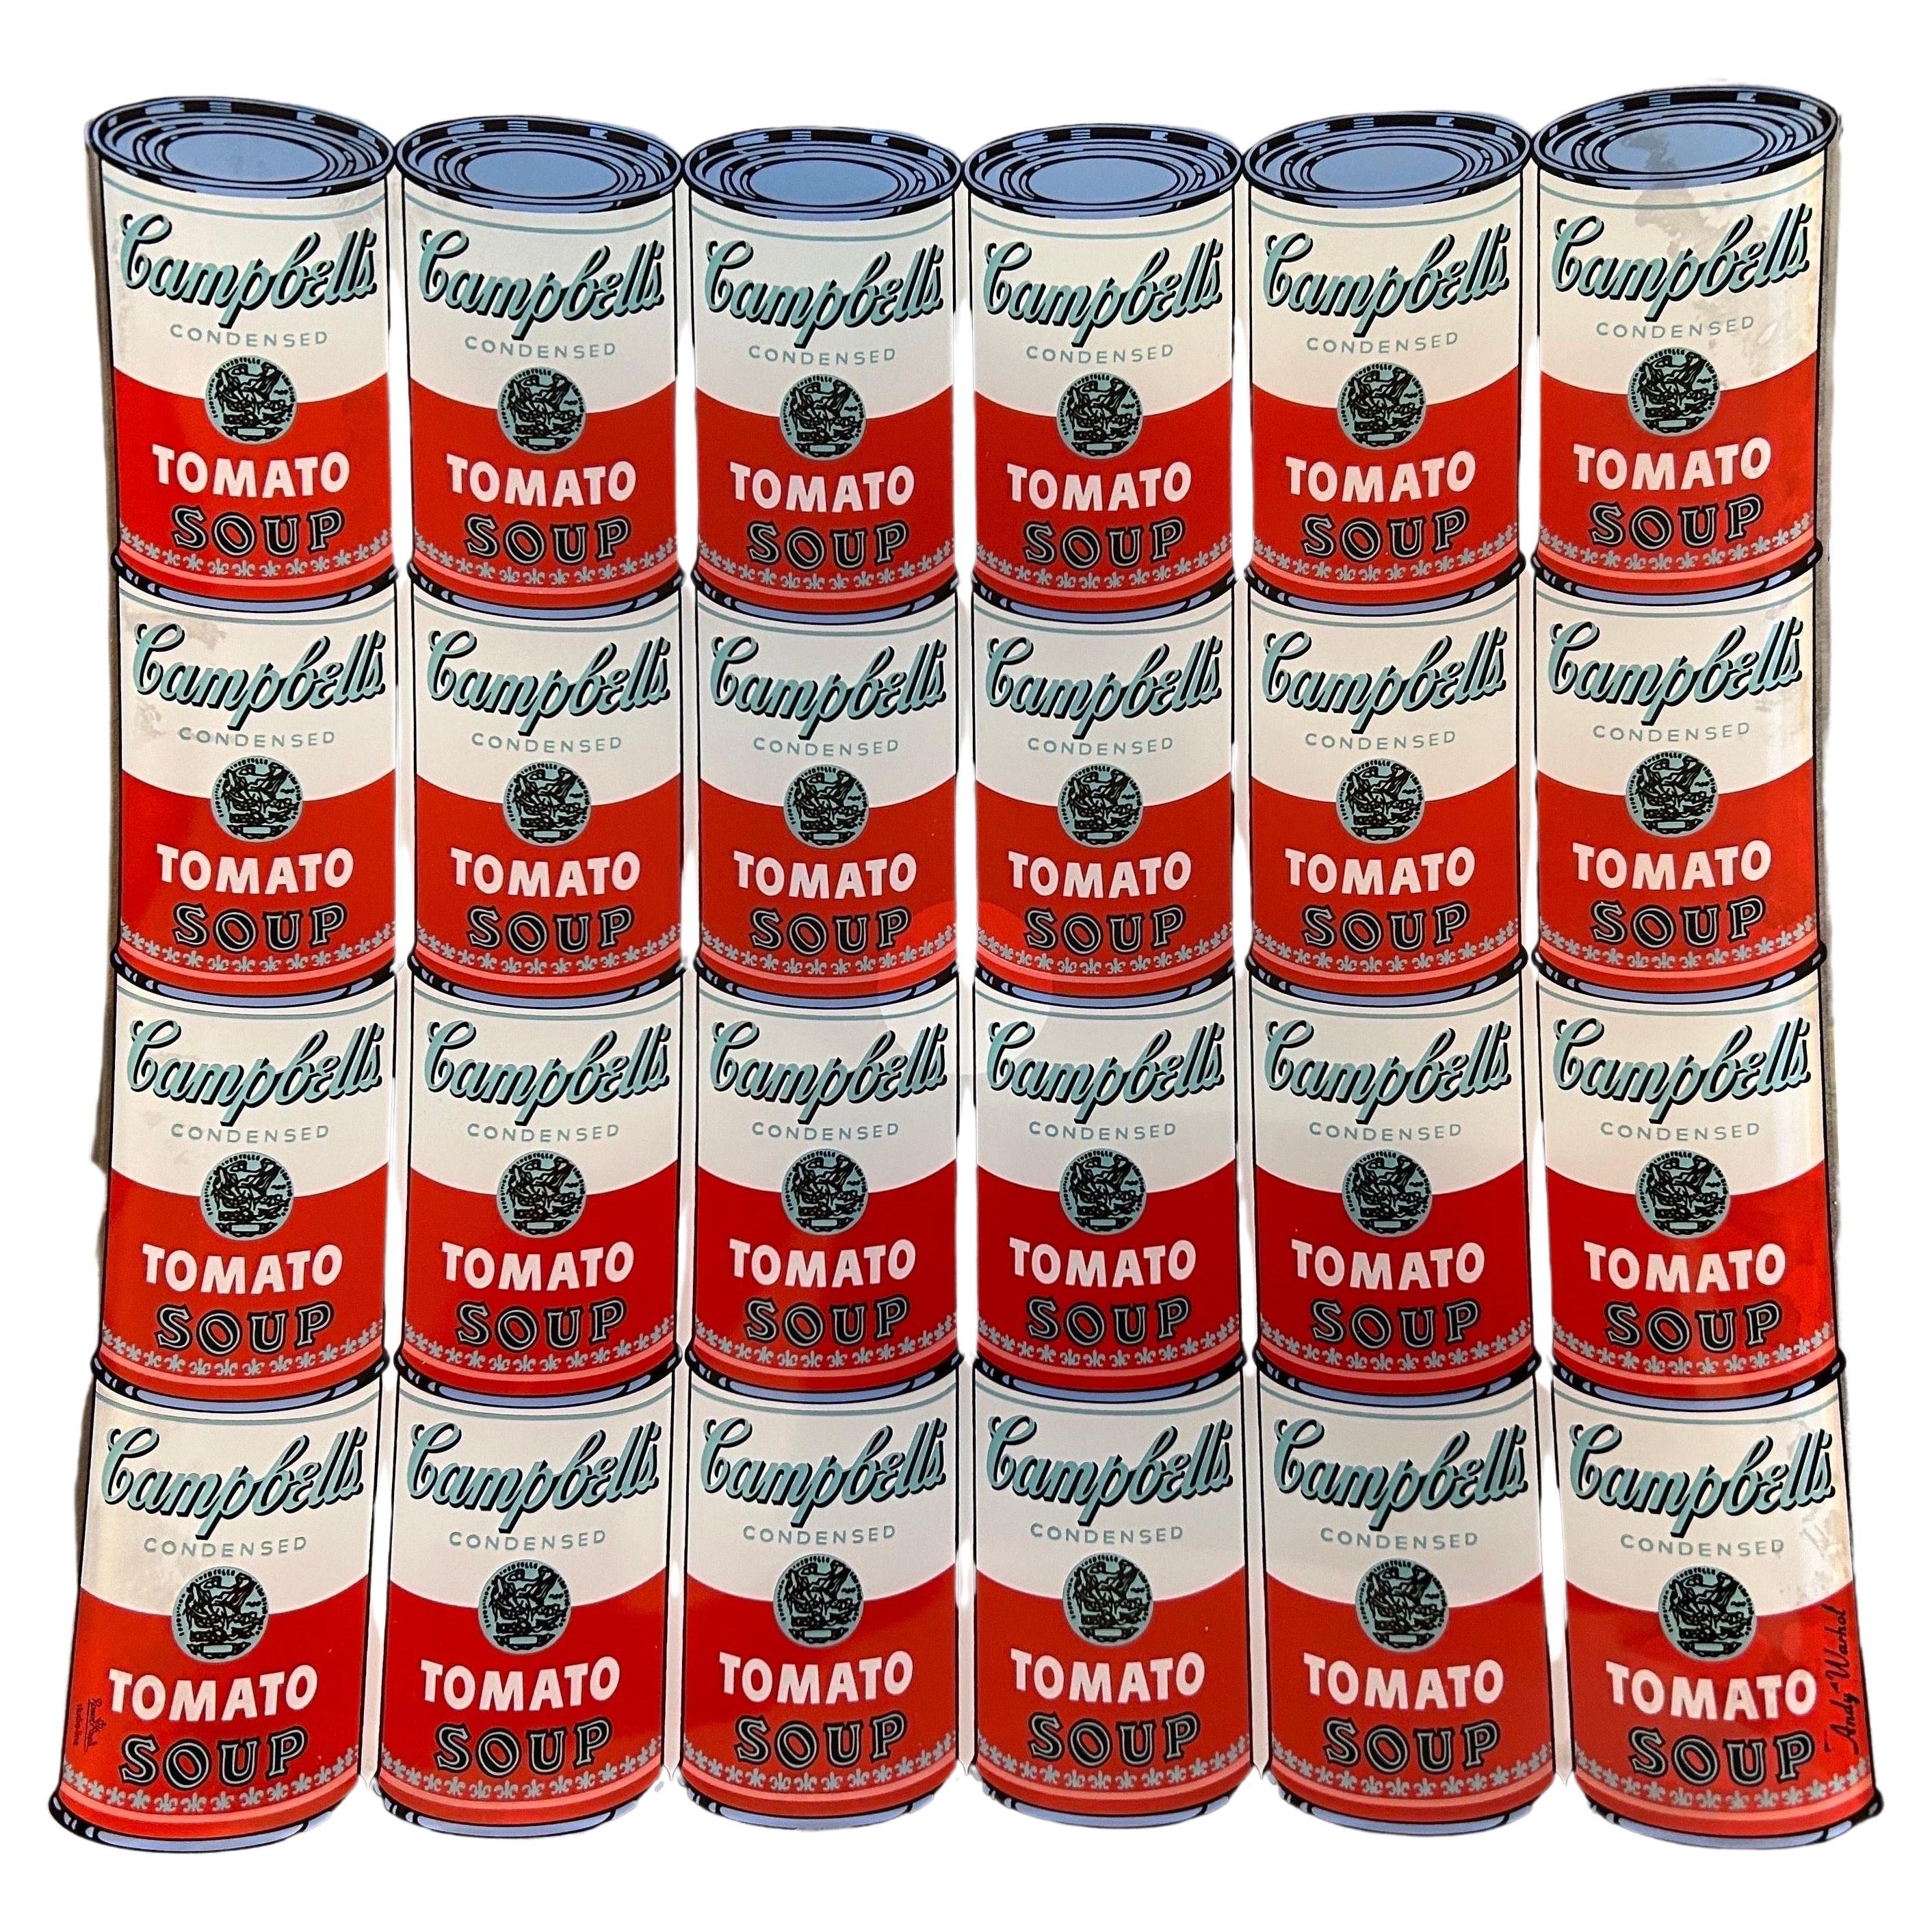 Das von Andy Warhol für Rosenthal entworfene Glastablett ist ein dekoratives Tablett, das Warhols ikonische Campbell Soup Dosenmotive zeigt. Dieses Tablett wurde in den 1990er Jahren von Rosenthal, einem deutschen Porzellan- und Glaswarenhersteller,